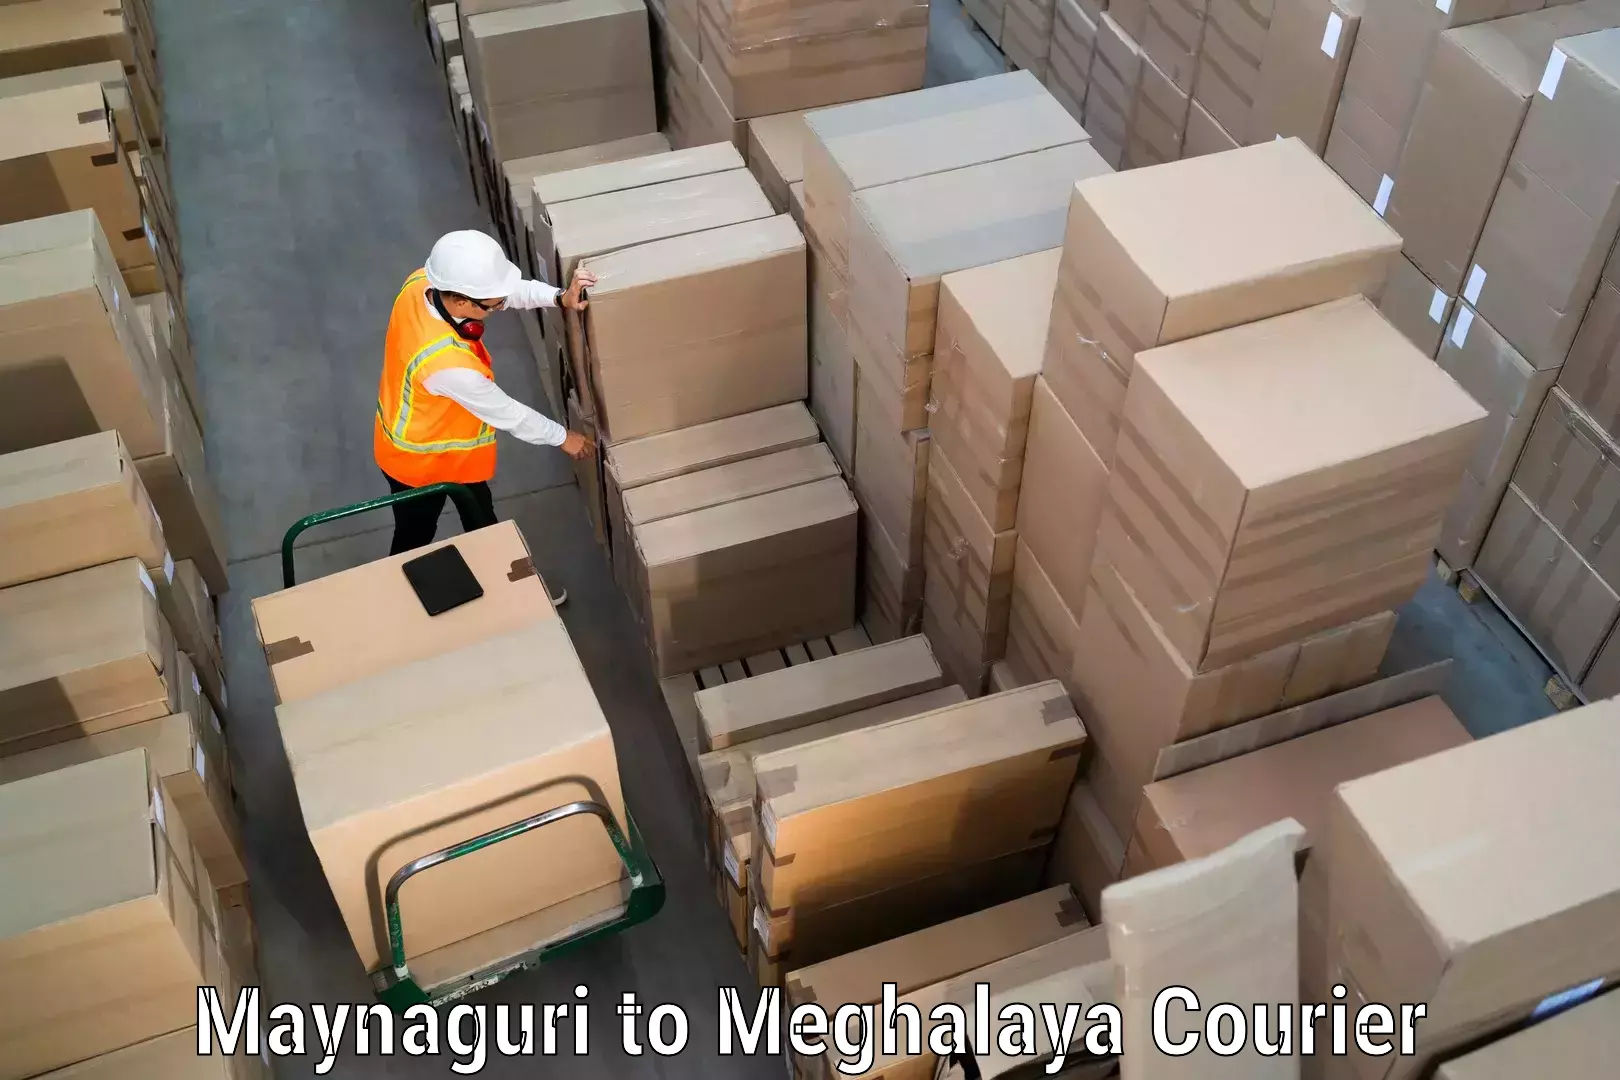 Modern courier technology Maynaguri to Meghalaya